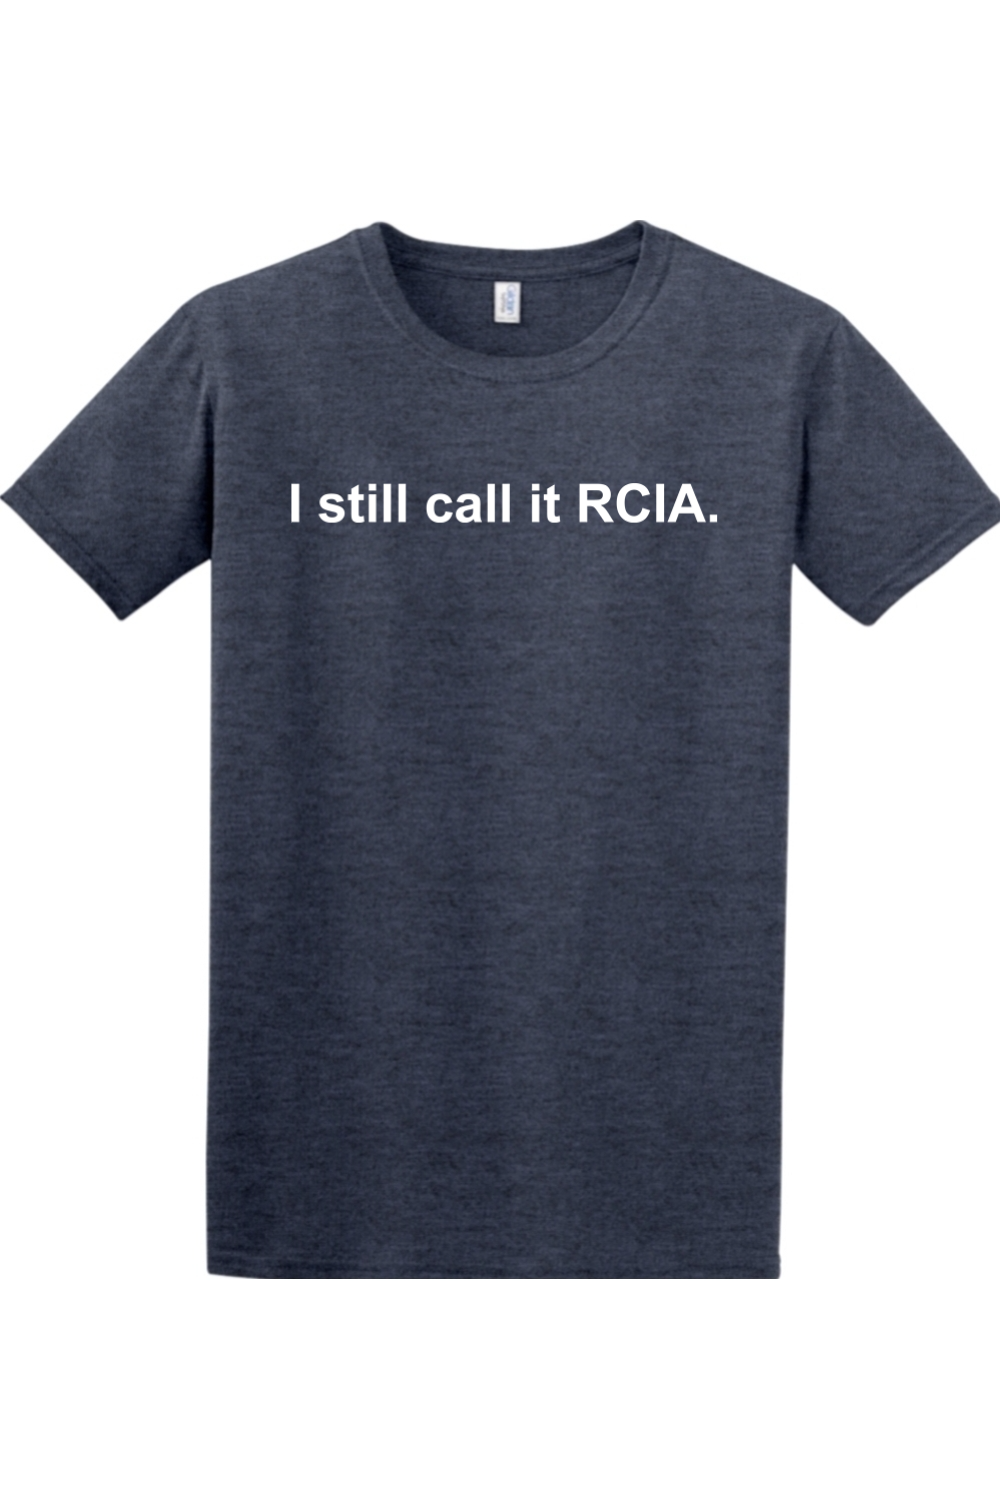 I Still Call it RCIA Adult T-Shirt